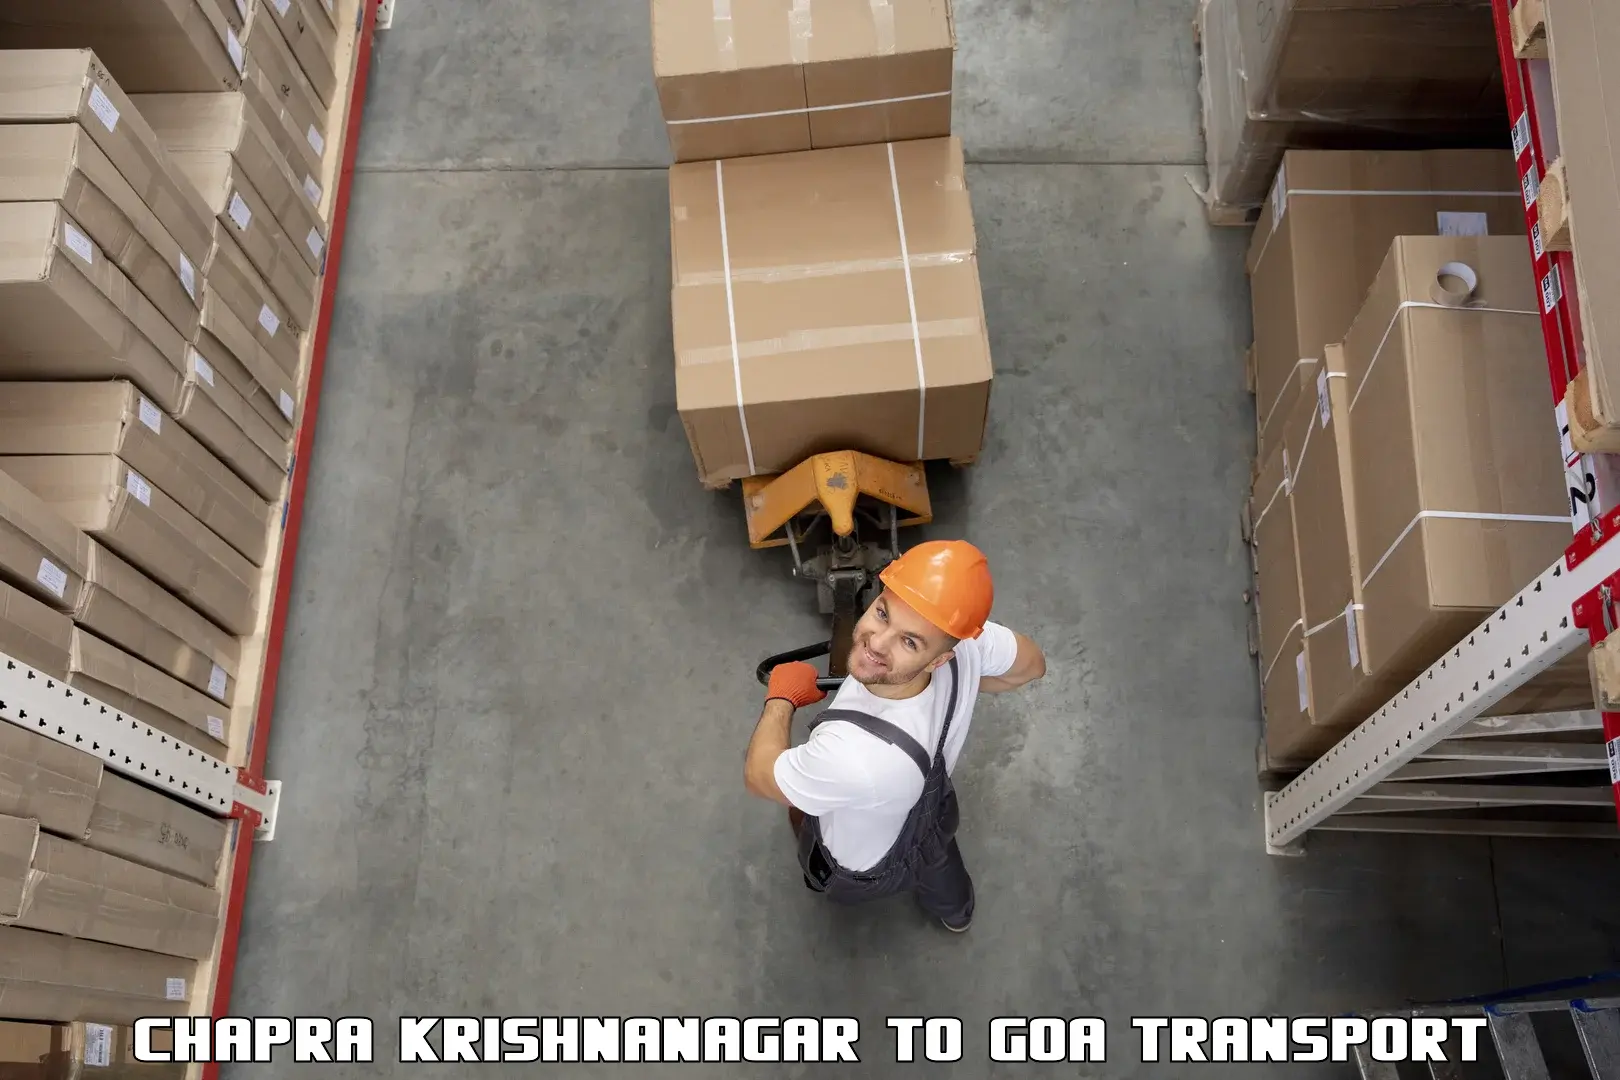 Lorry transport service Chapra Krishnanagar to Panjim